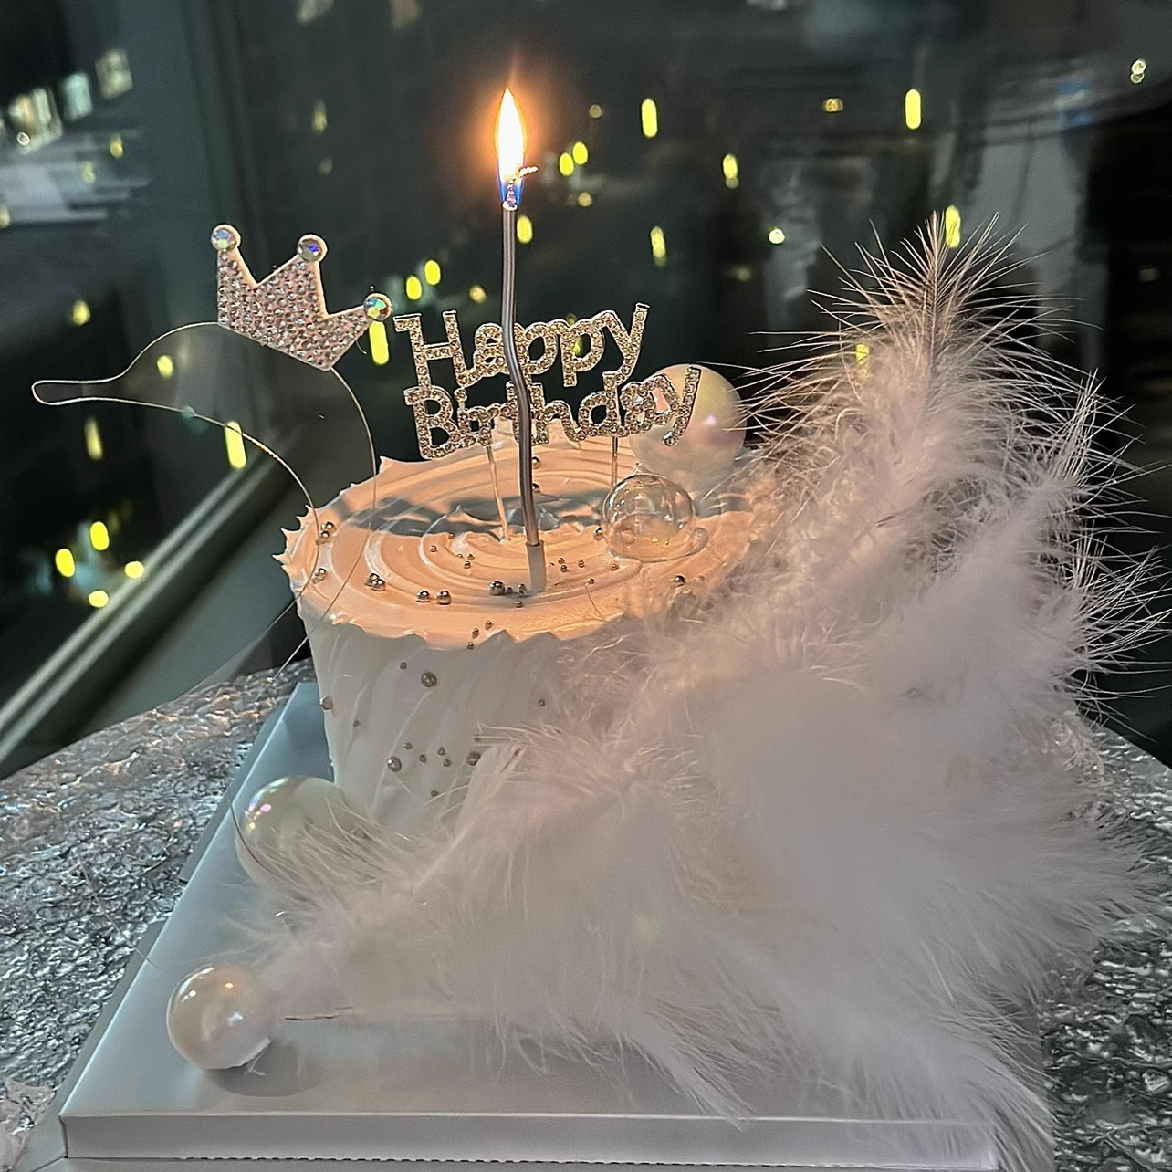 Cake Topper - Happy Birthday Topper Diamond, Shiny